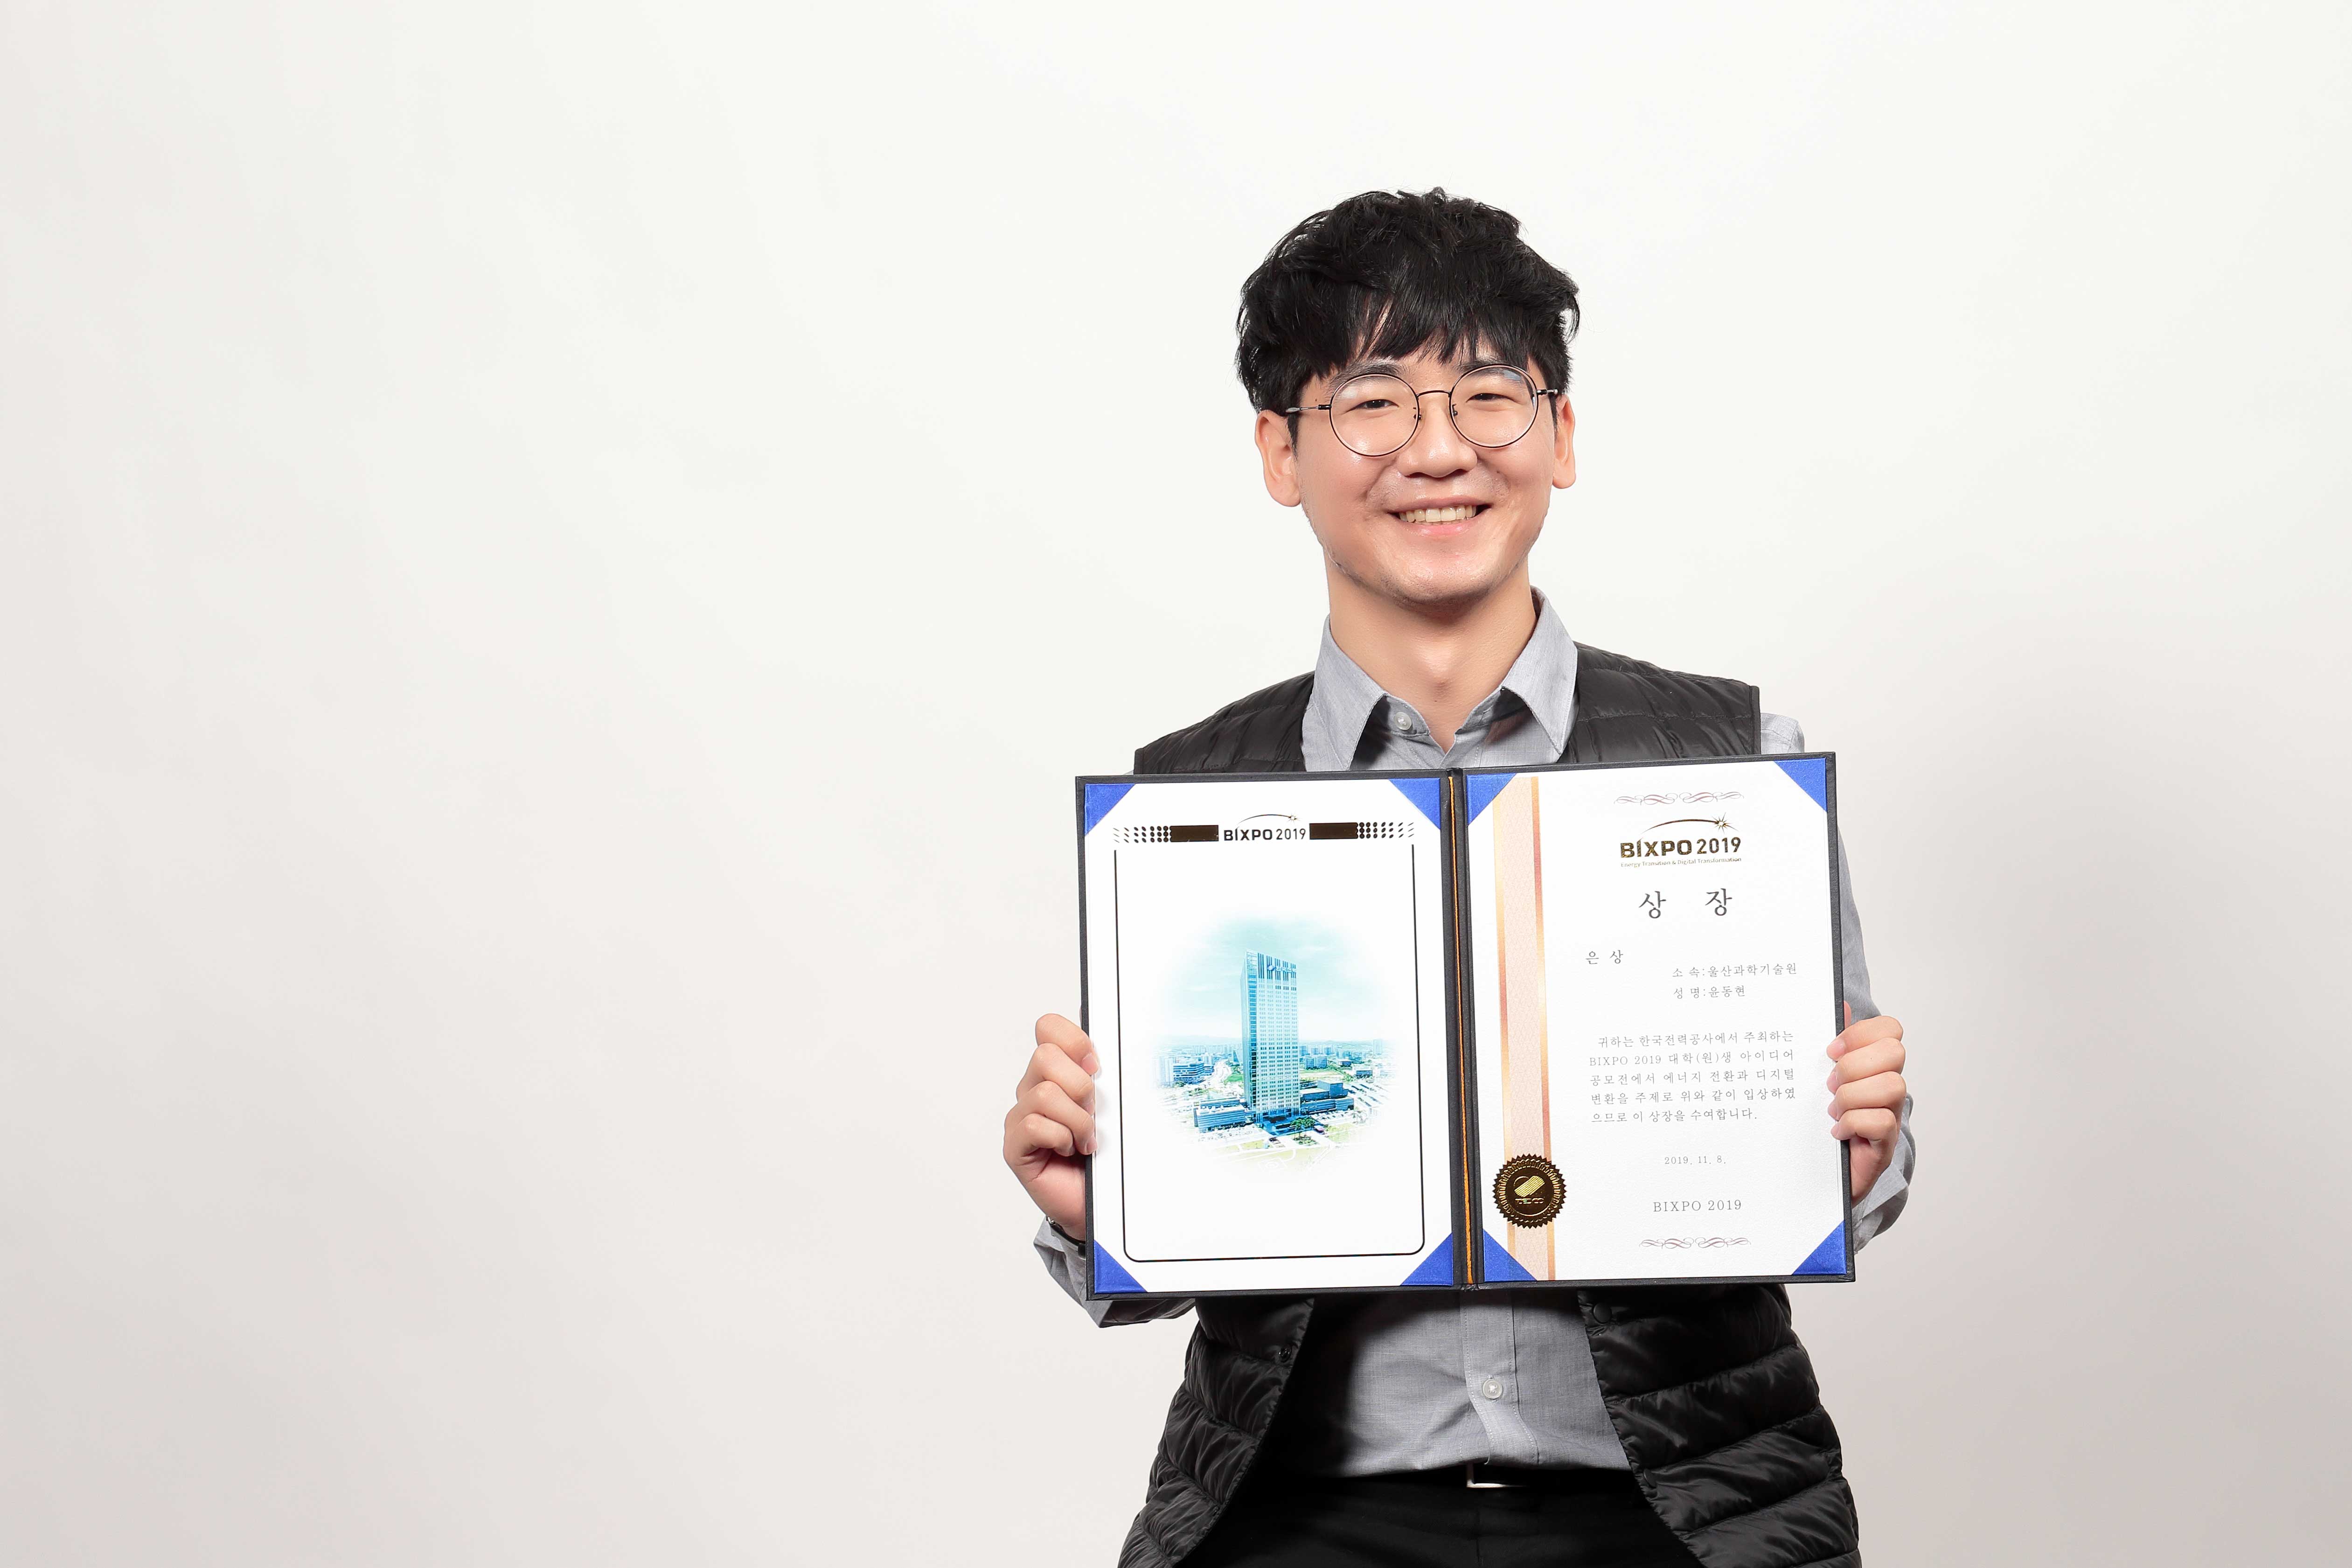 윤동현 학생이 빅스포 대학생 아이디어 공모전에서 은상을 수상했다. | 사진: 김경채